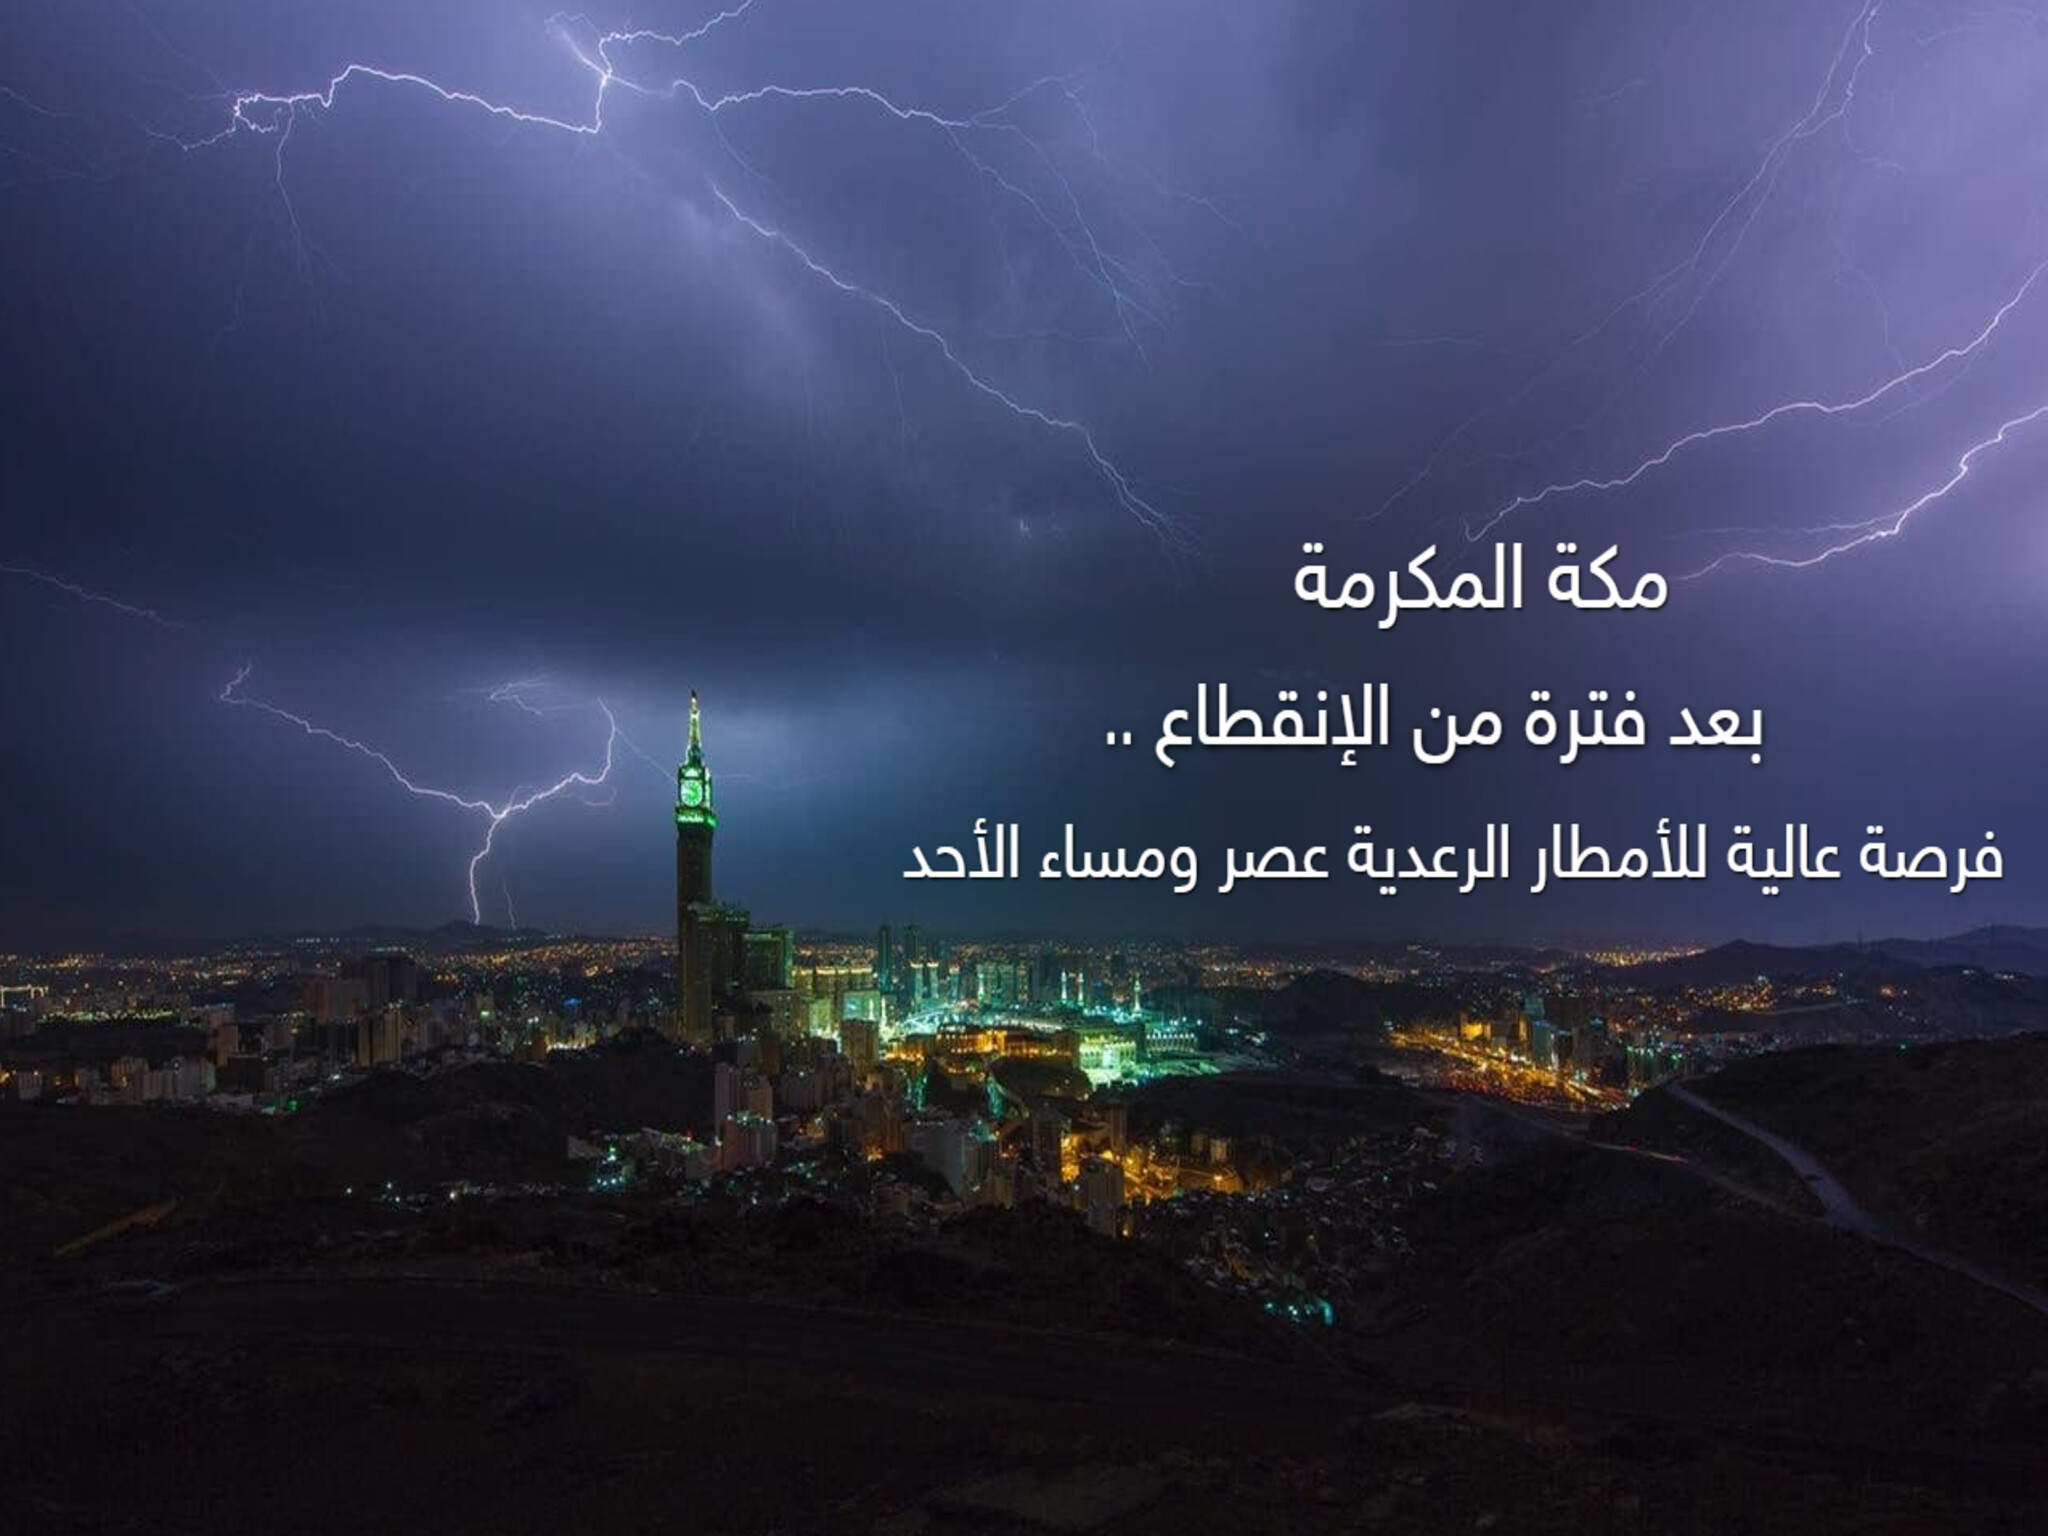 الدفاع المدني يوجه تحذيرات بشأن الحالة المناخية الغير مستقرة في مكة المكرمة